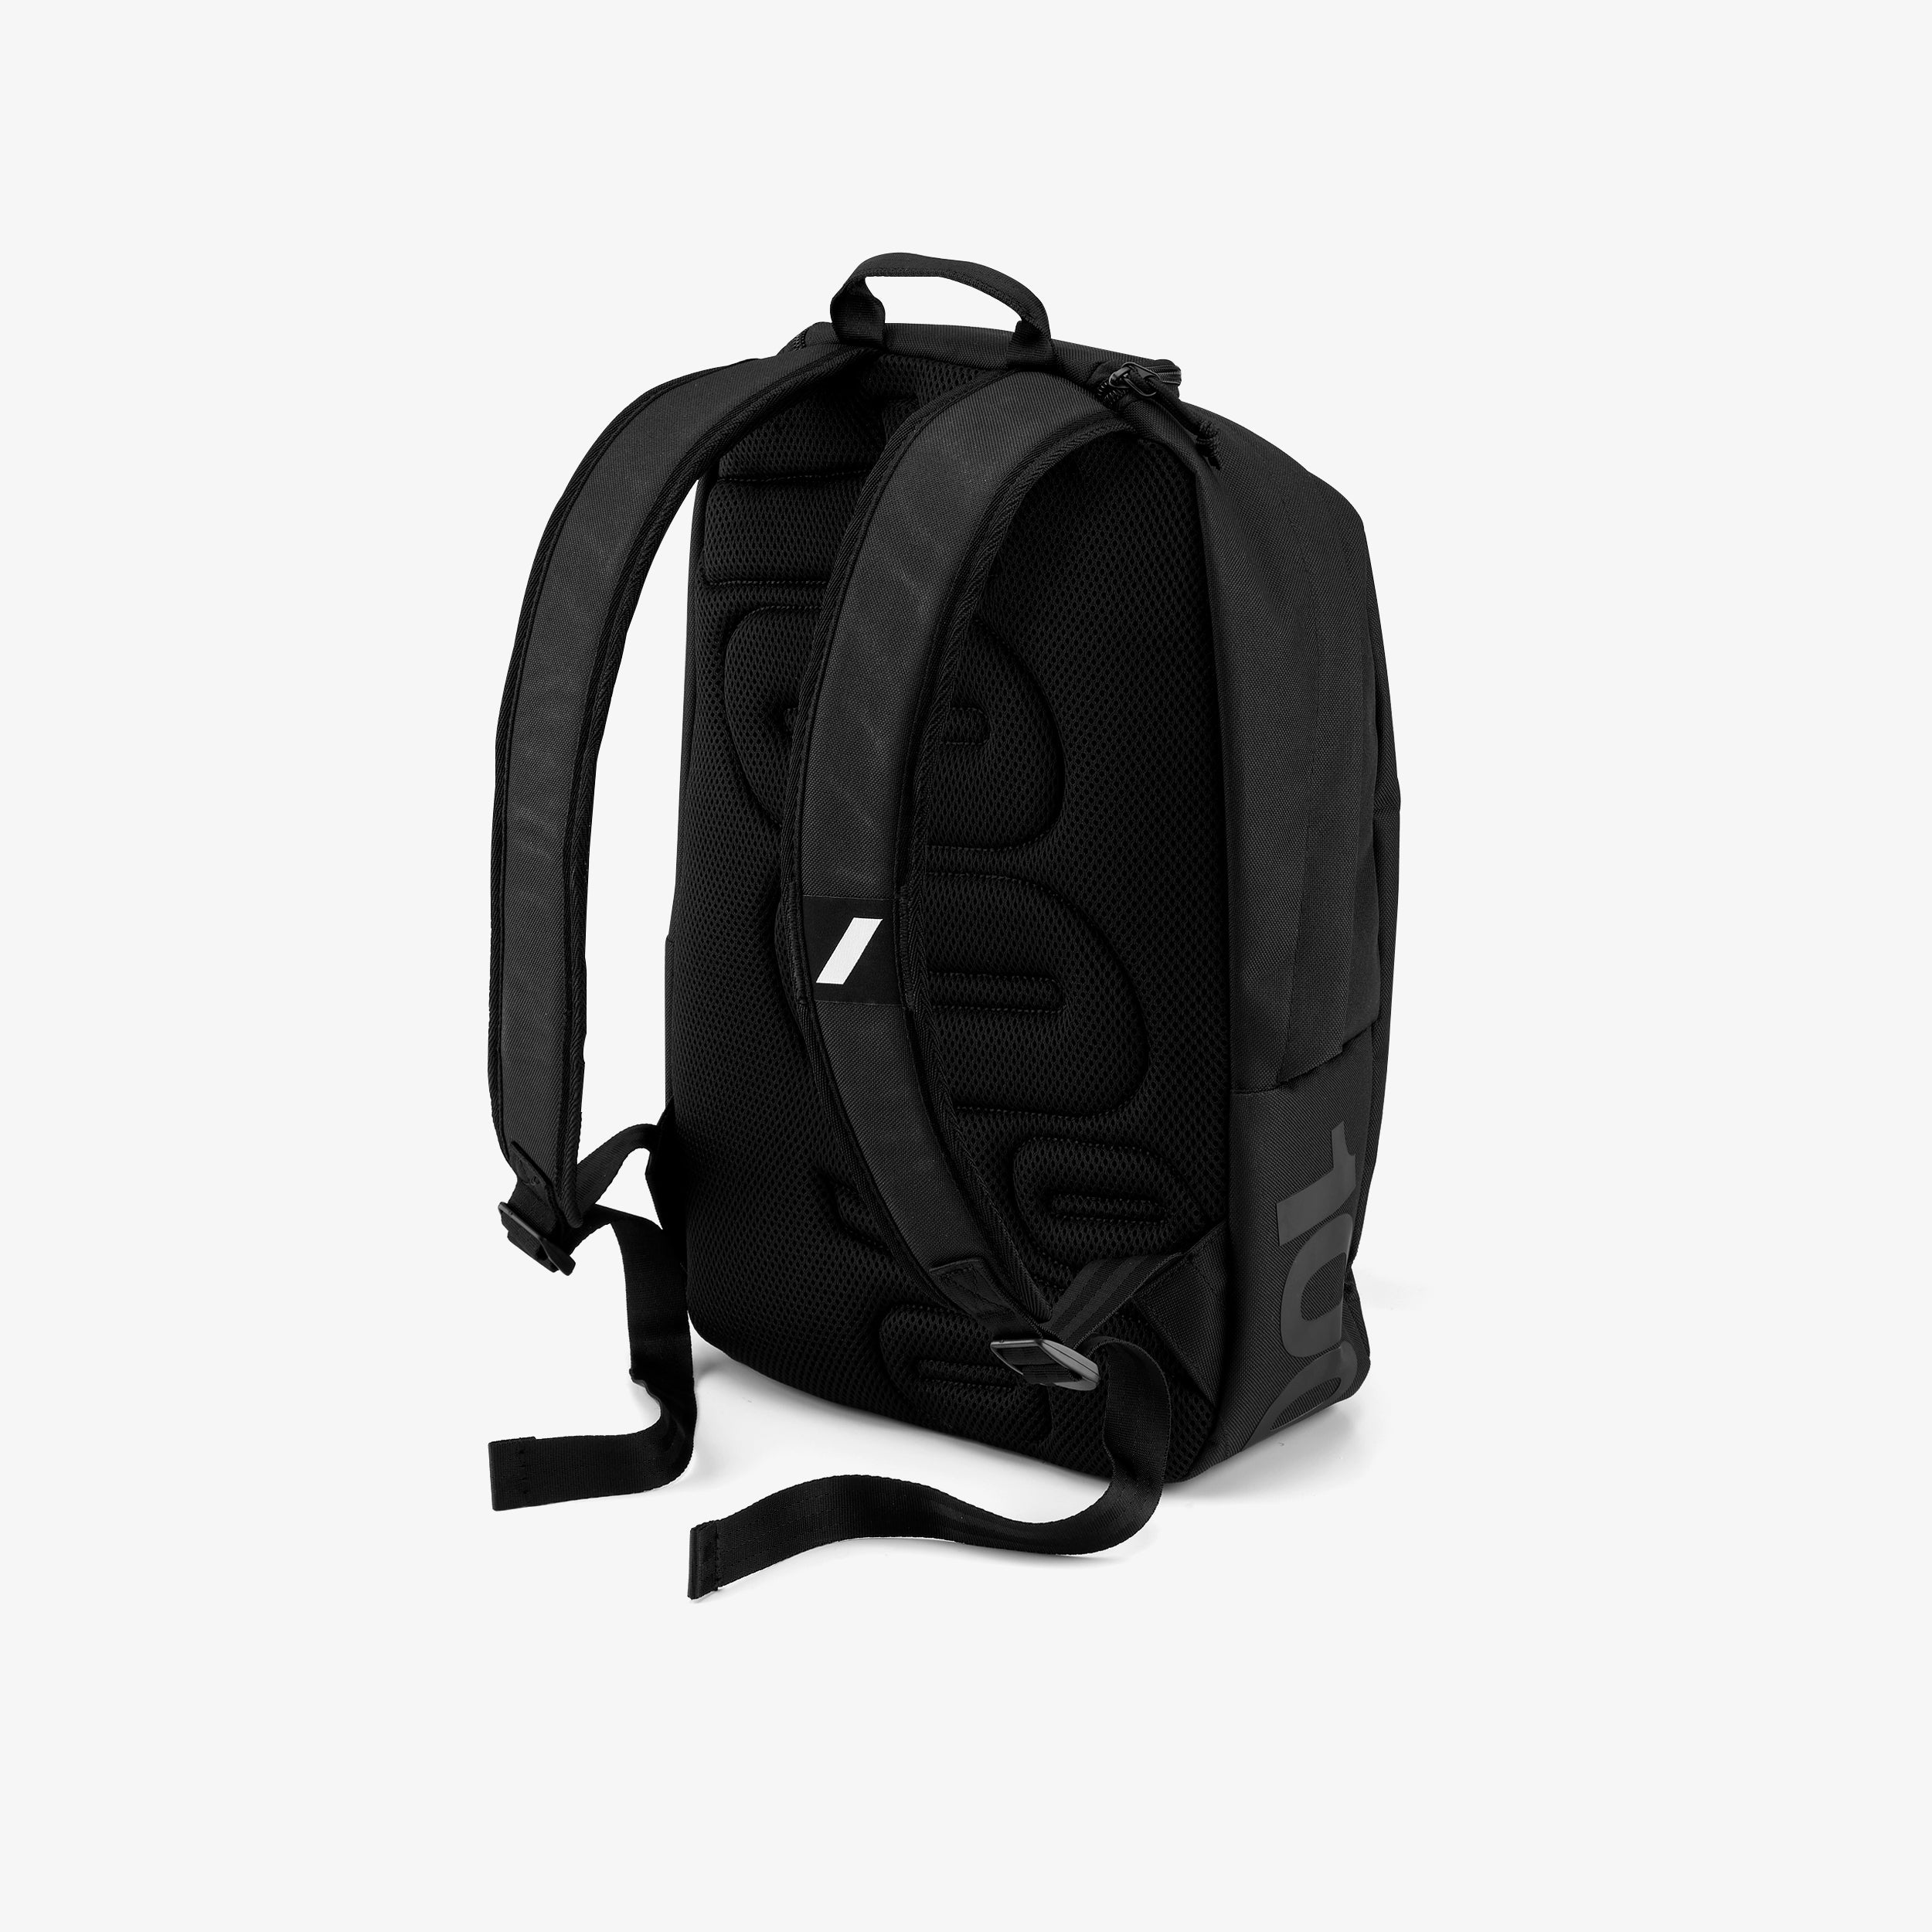 SKYCAP Black Backpack